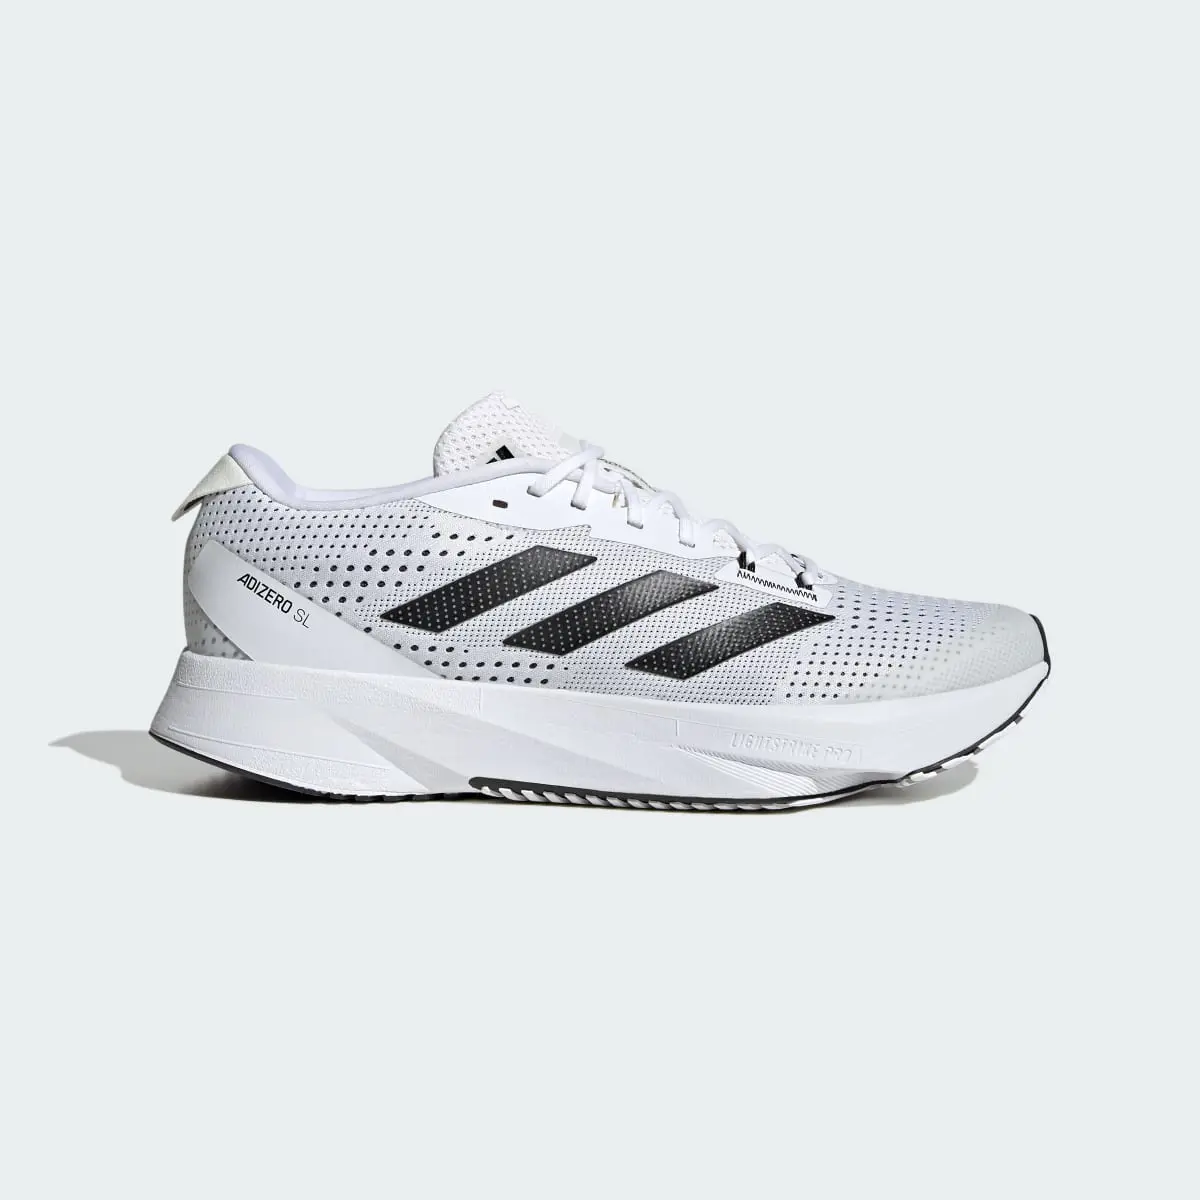 Adidas Adizero SL Running Shoes. 2